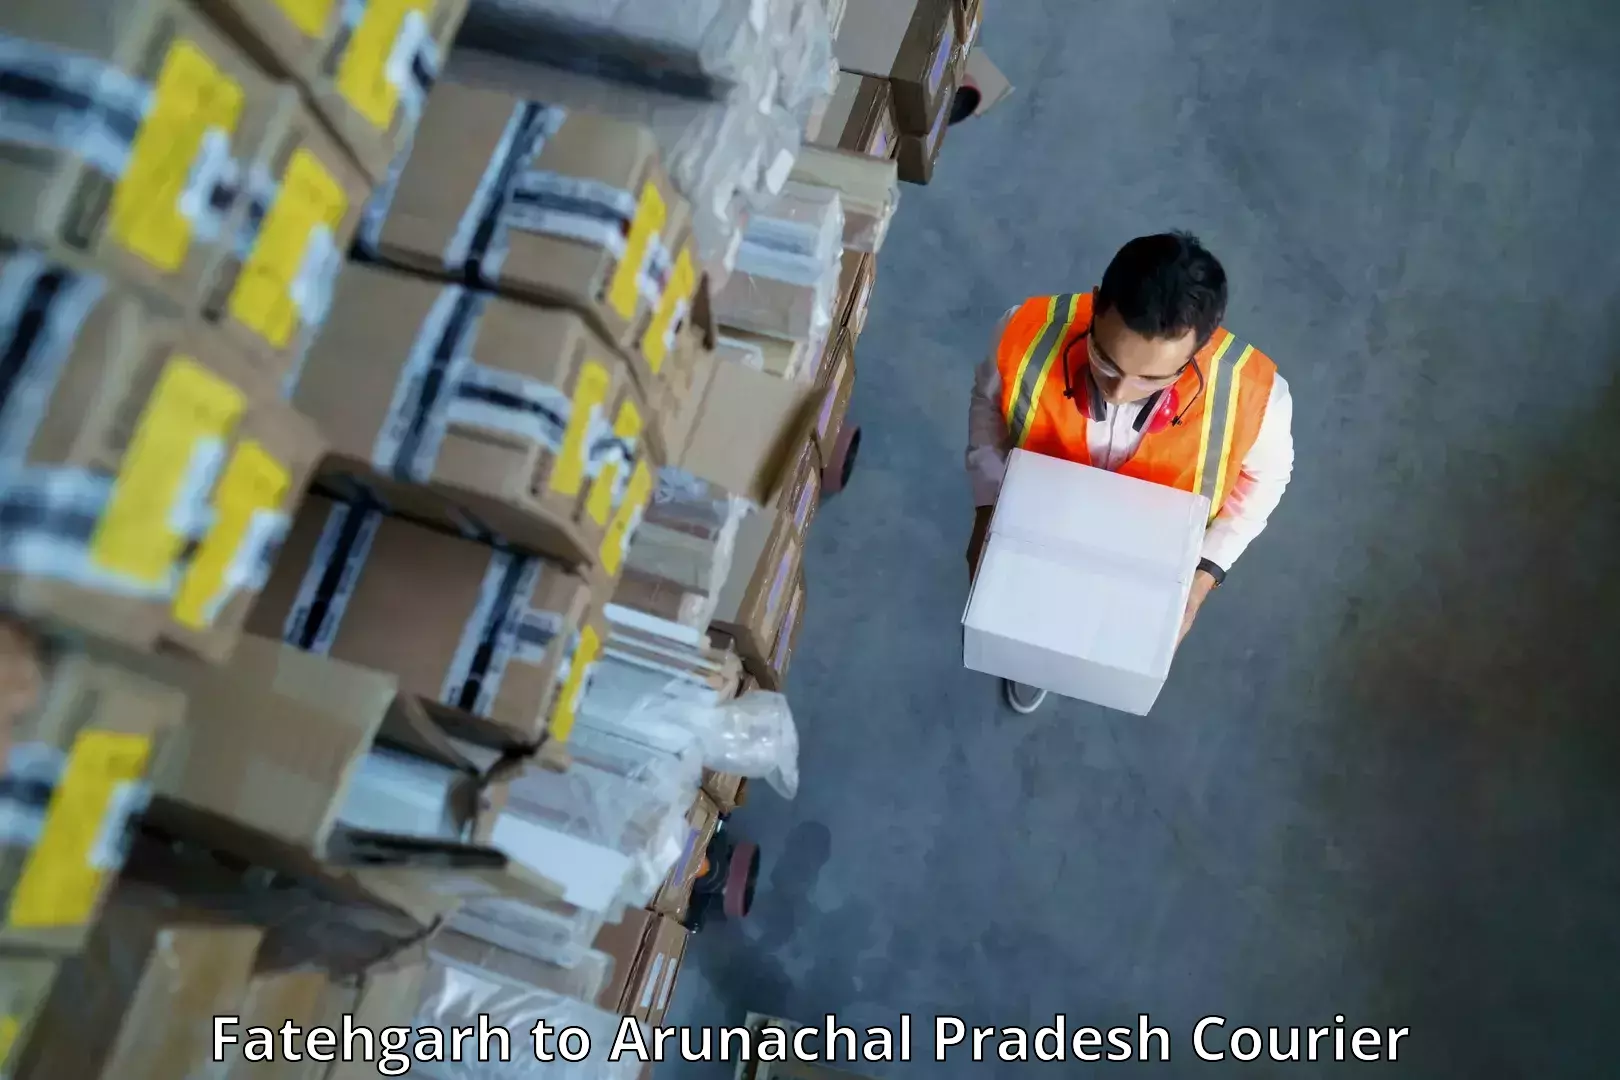 Courier service efficiency Fatehgarh to Naharlagun